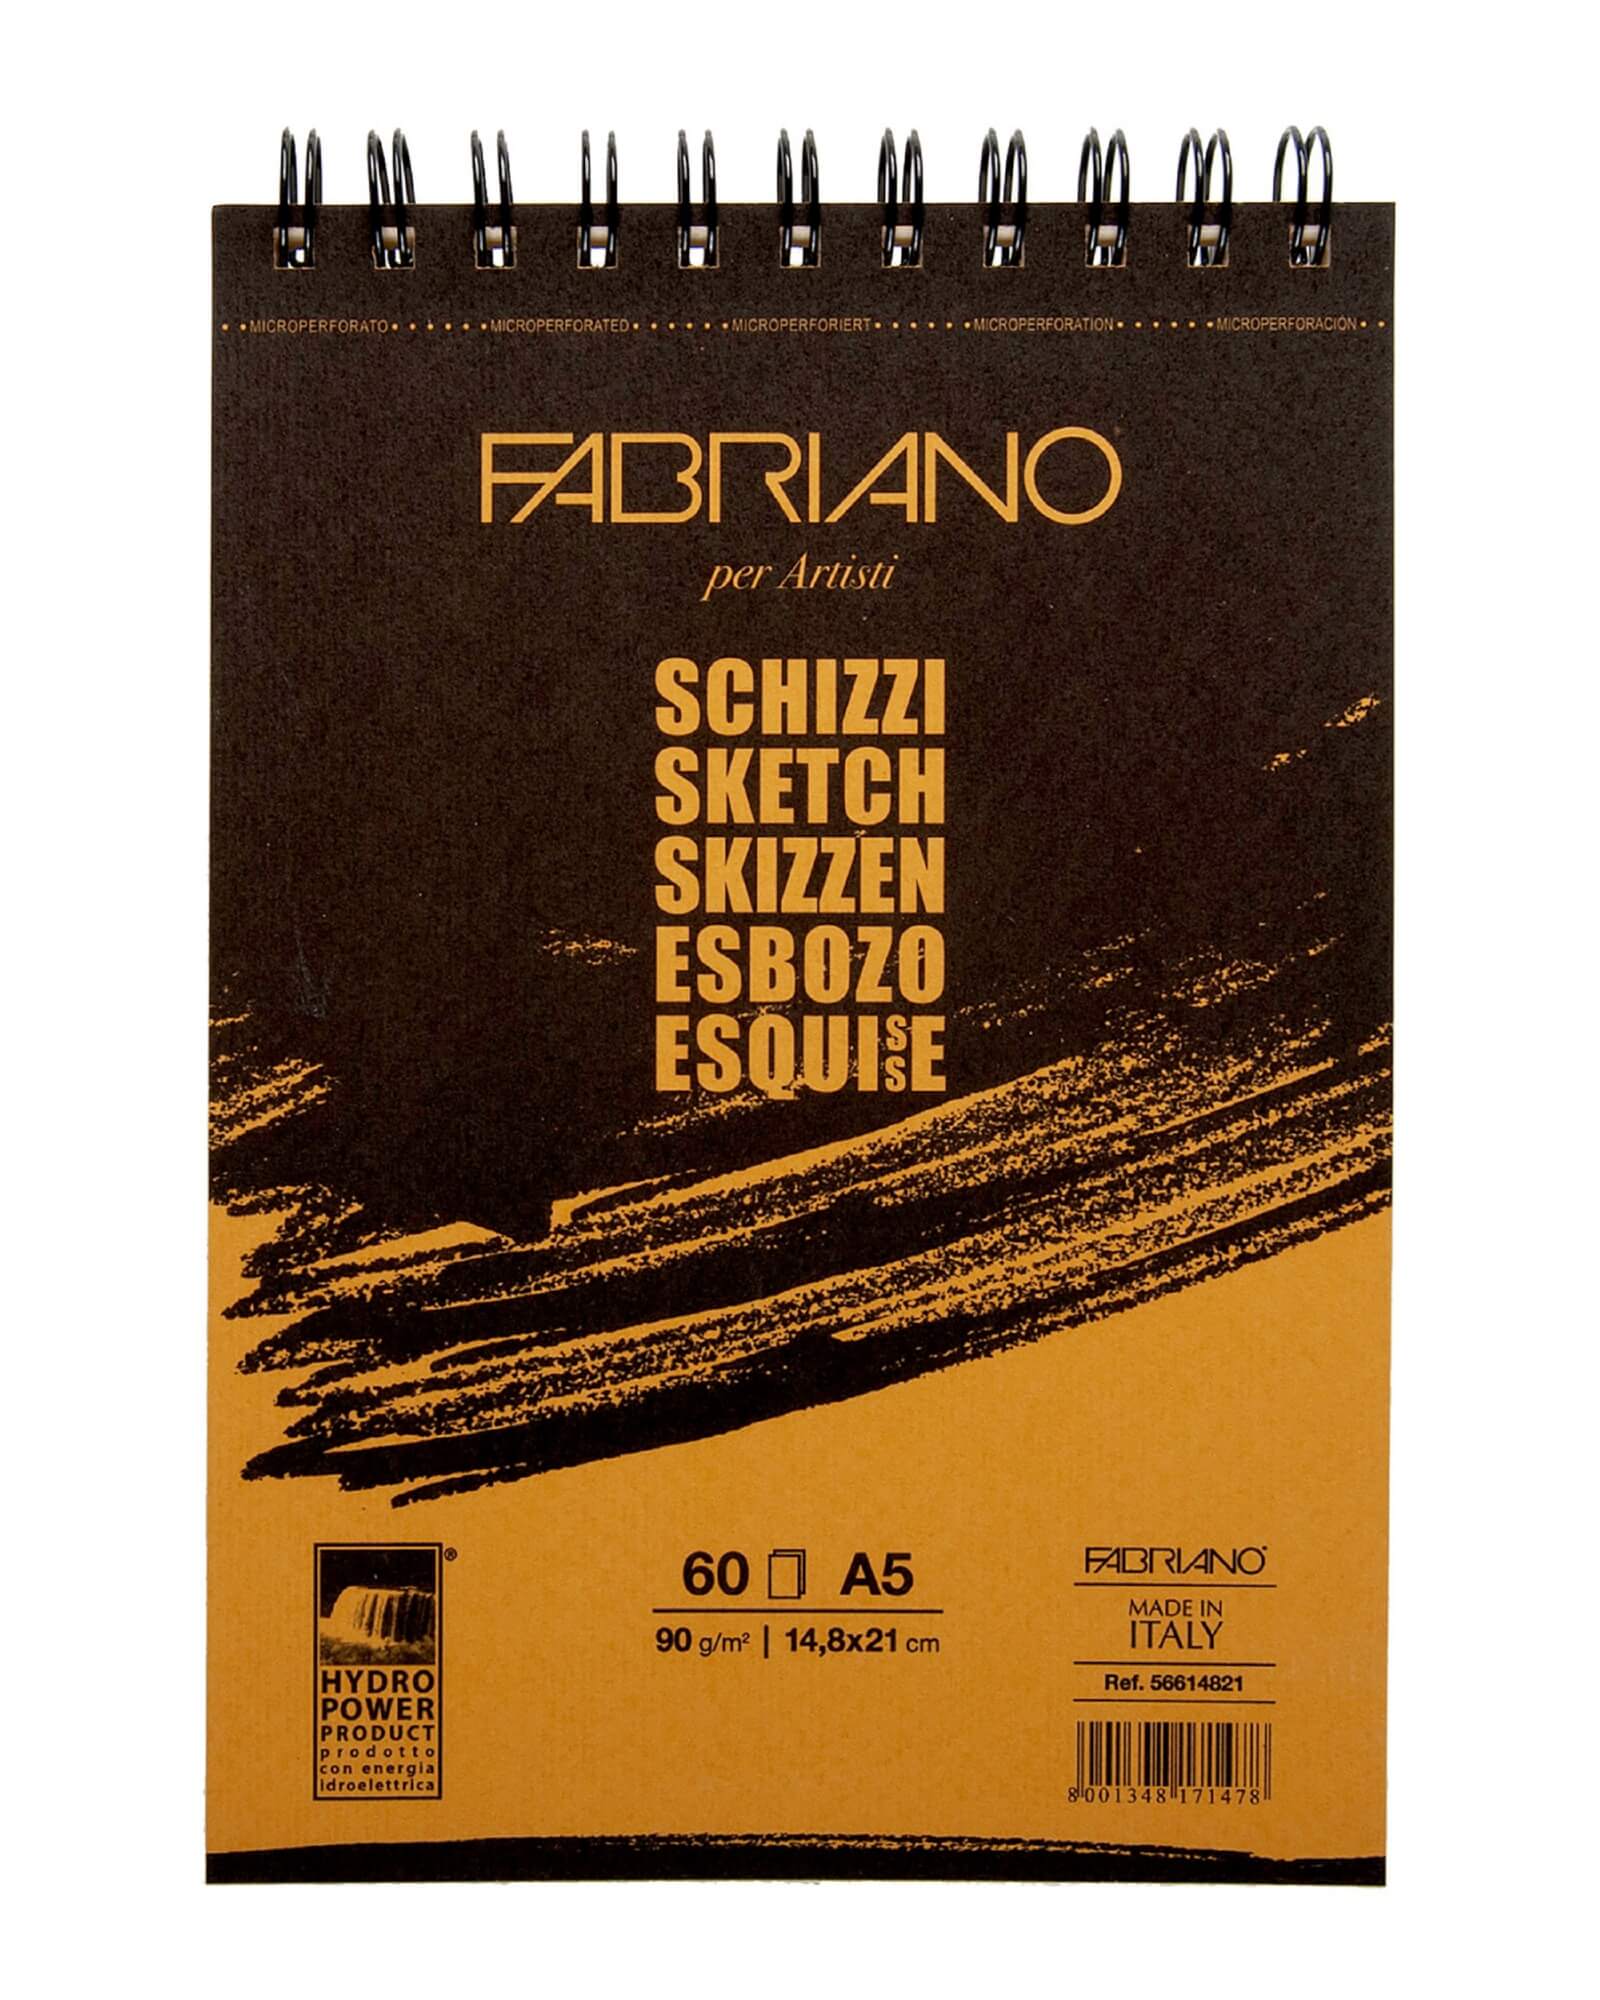 Альбом для зарисовок Schizzi 90г/м.кв 14,8x21см мелкозернистая темная обложка 60л спираль по короткой стороне.